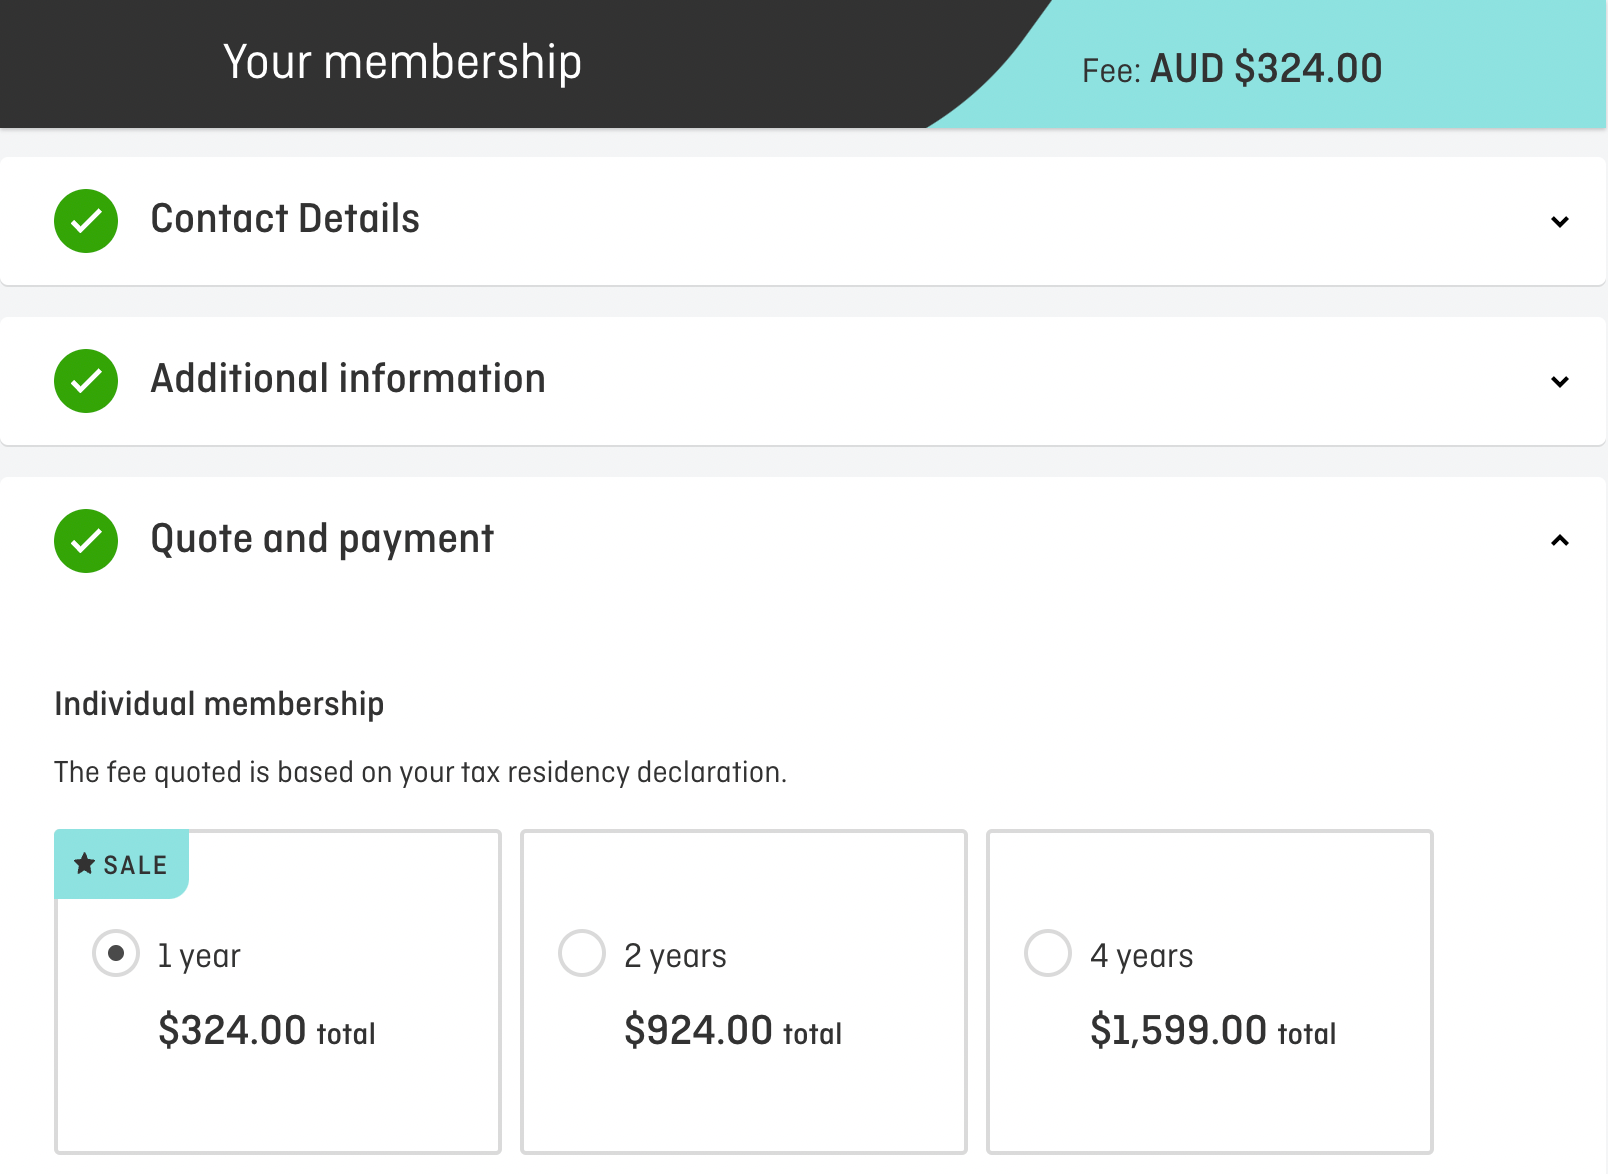 Purchasing a membership to the Qantas Club